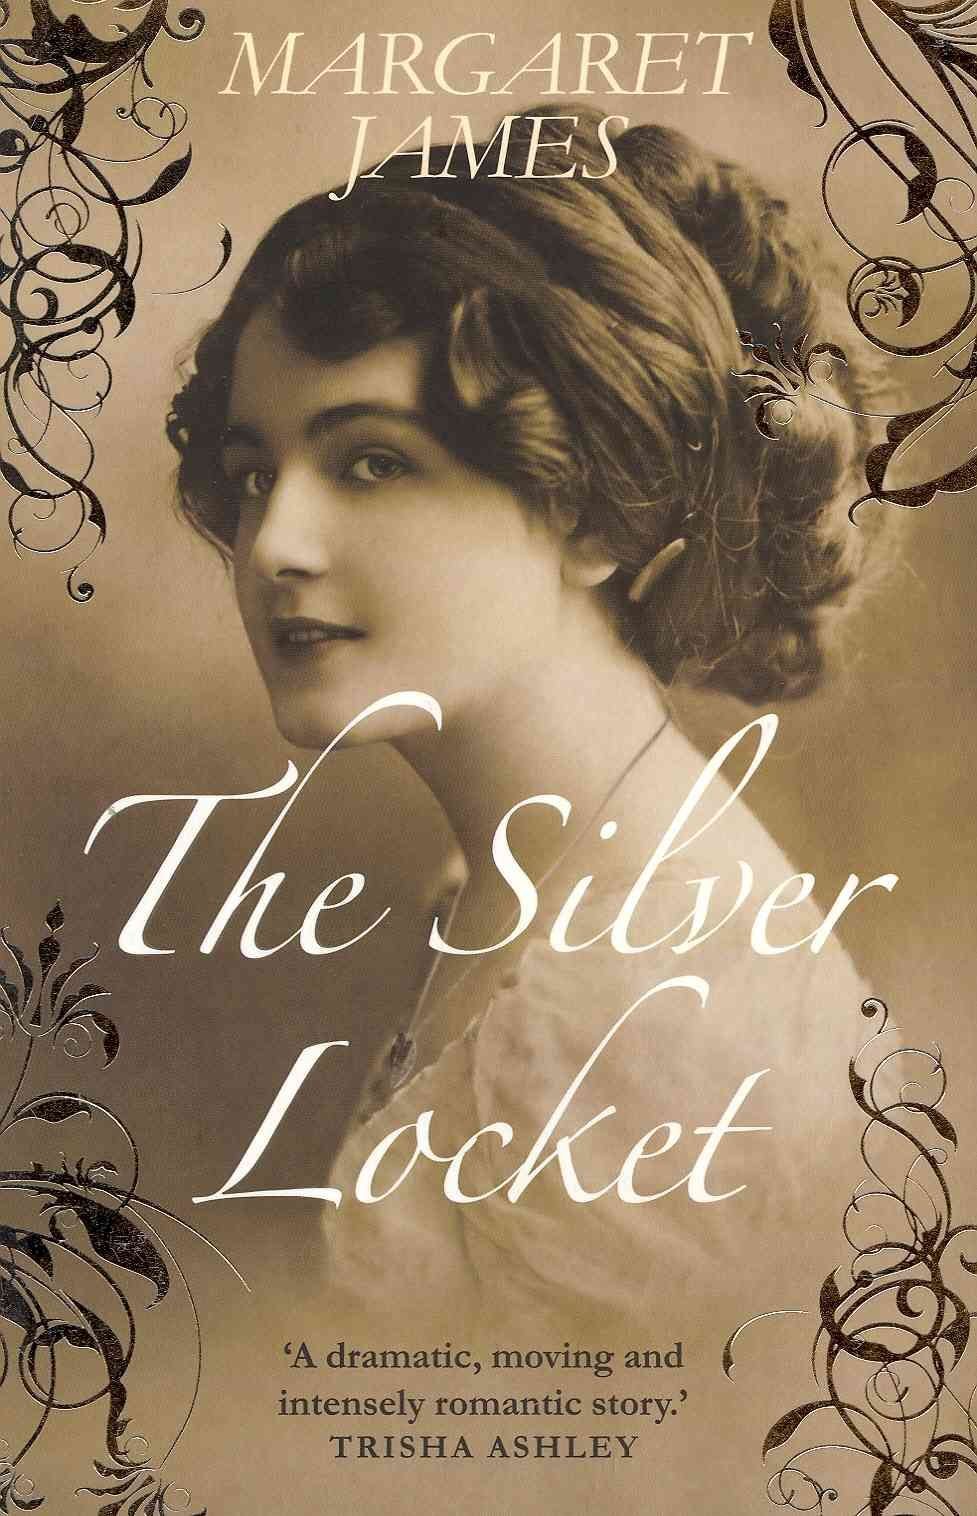 Silver Locket: Book 1